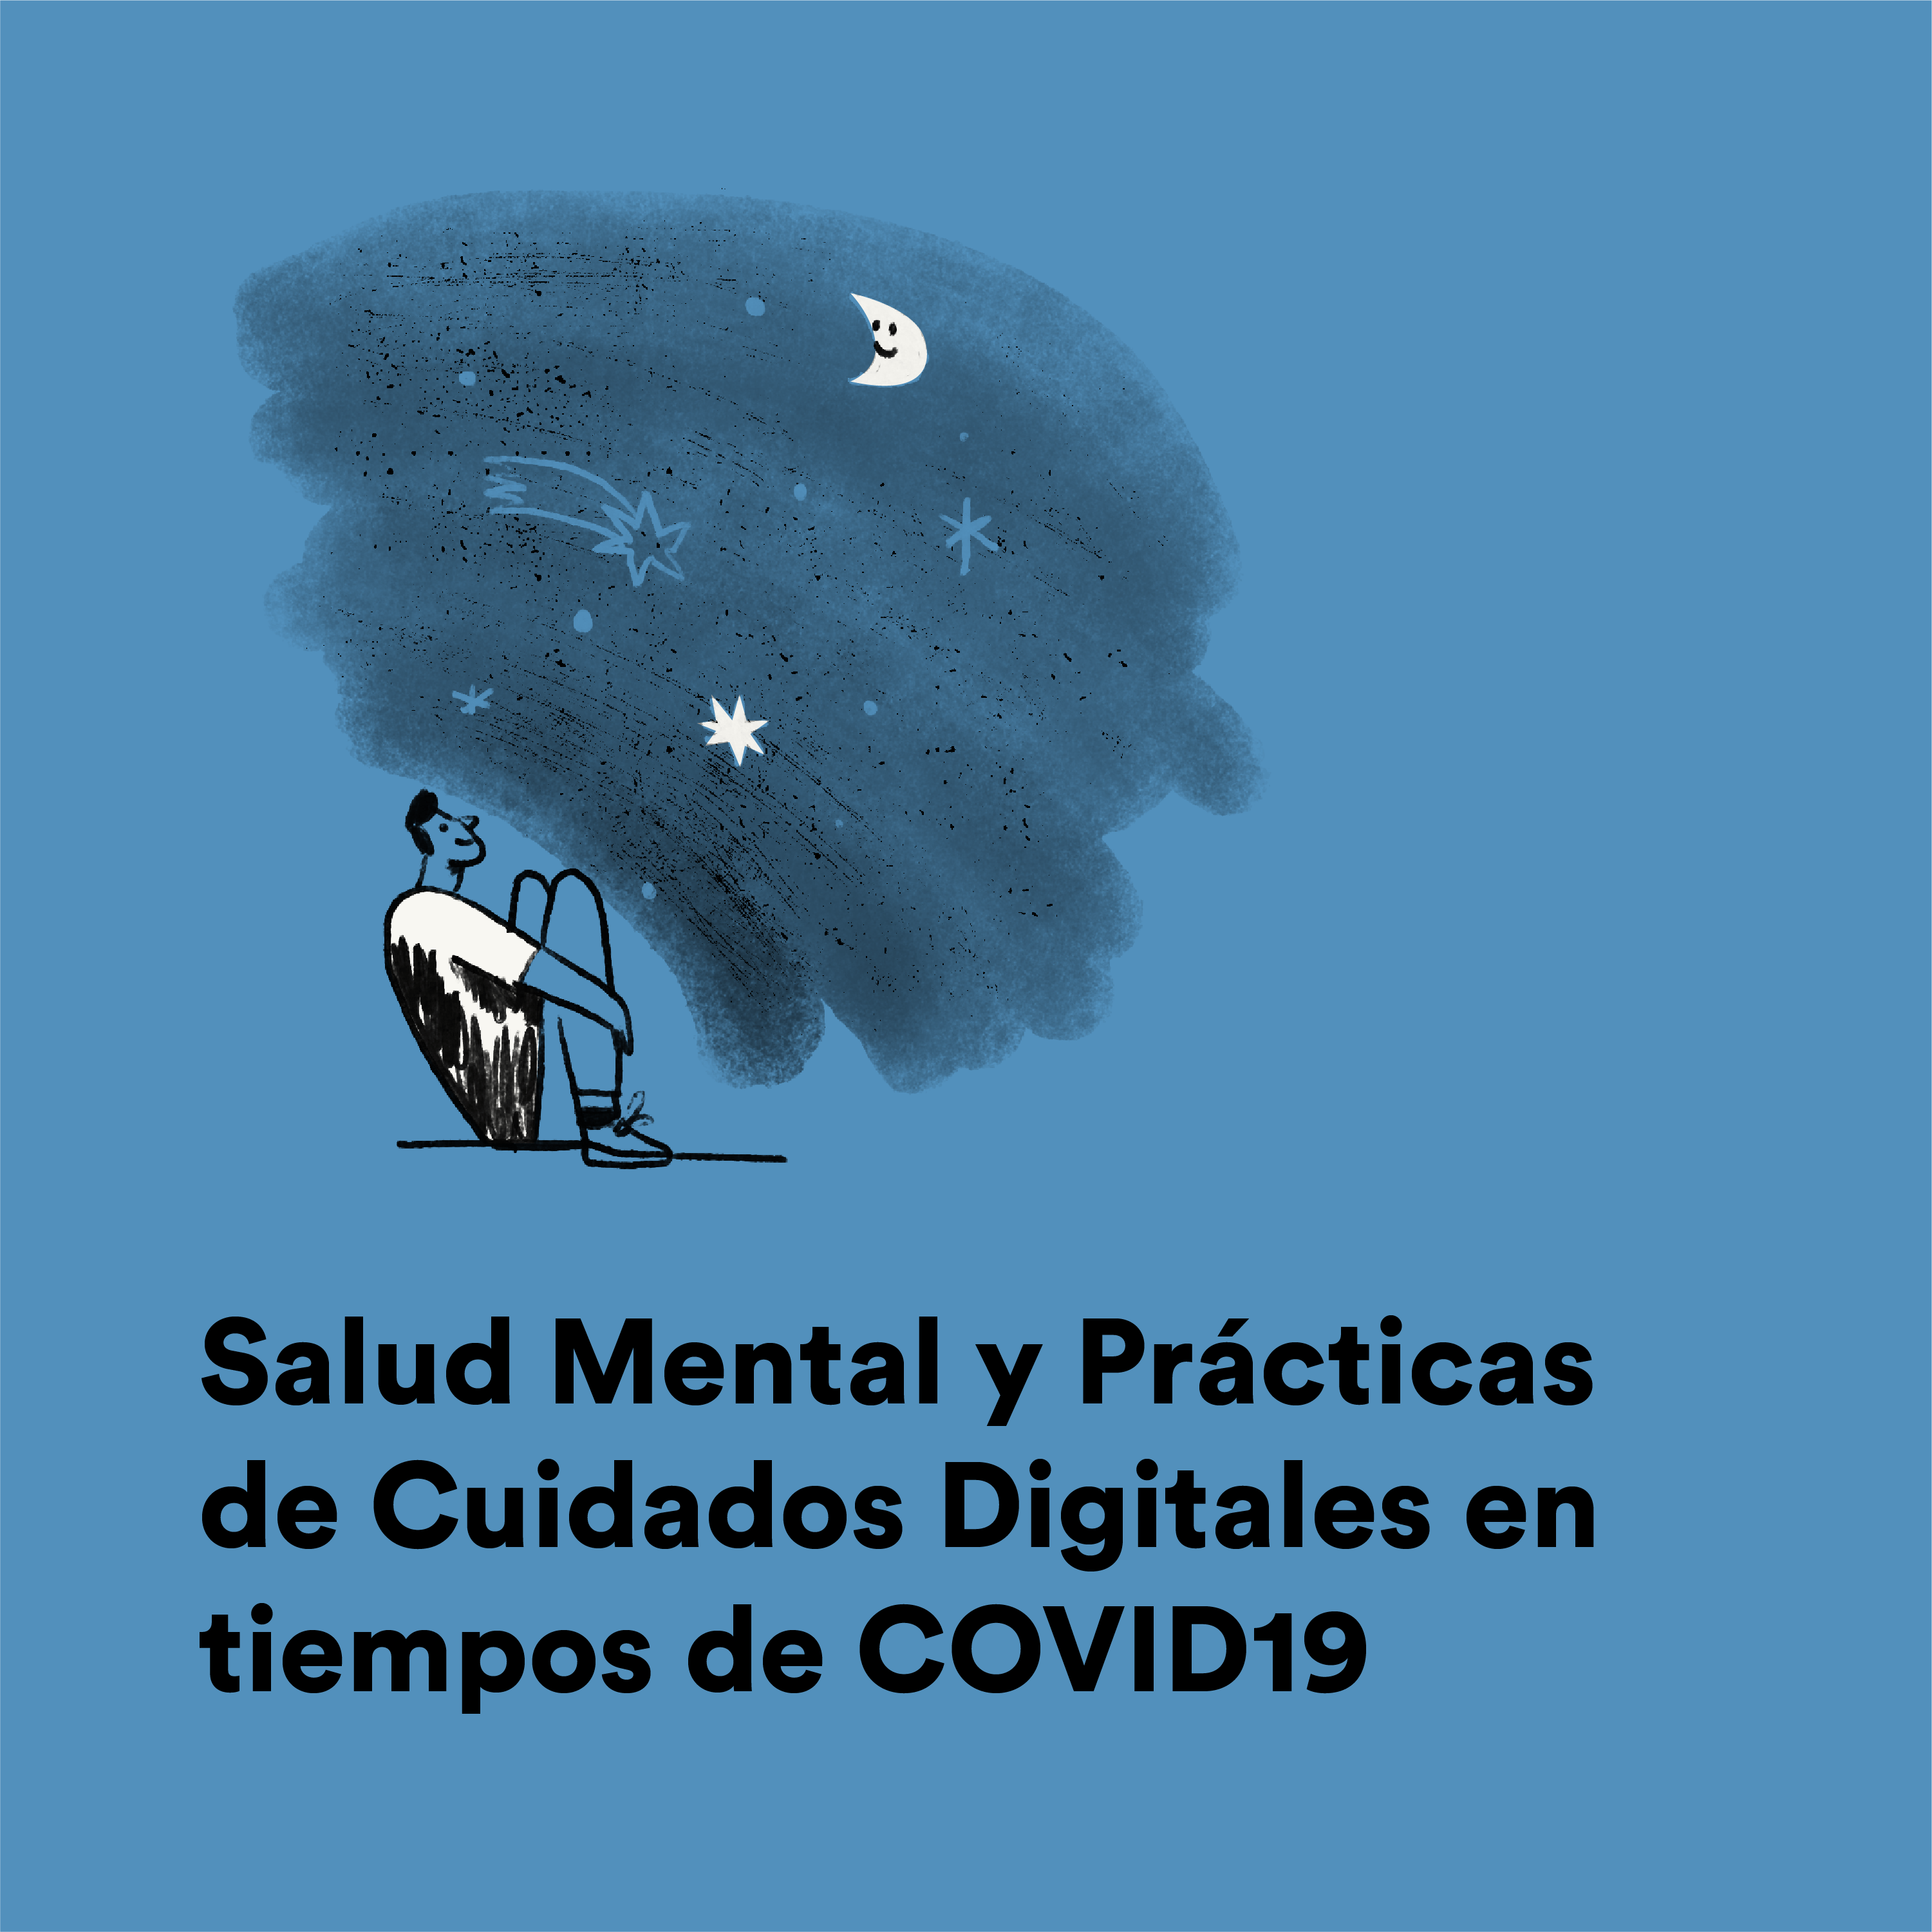 Salud Mental y Prácticas de Cuidados Digitales en tiempos de COVID19